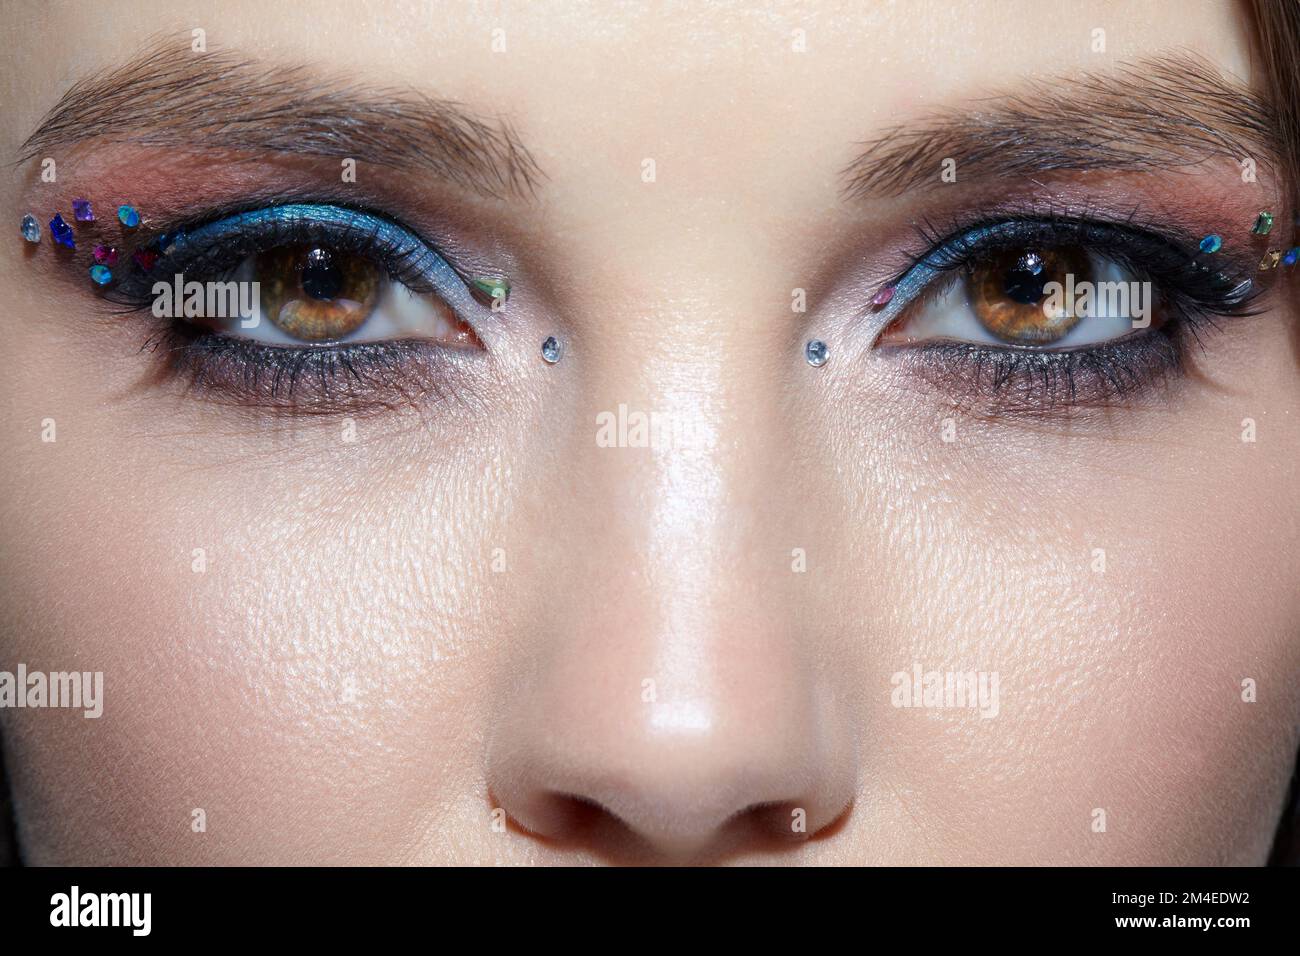 Nahaufnahme des menschlichen Frauengesichts. Frau mit natürlichem Gesicht  und Augen Beauty Make-up mit blauem Lidschatten und Strasssteinen  Stockfotografie - Alamy